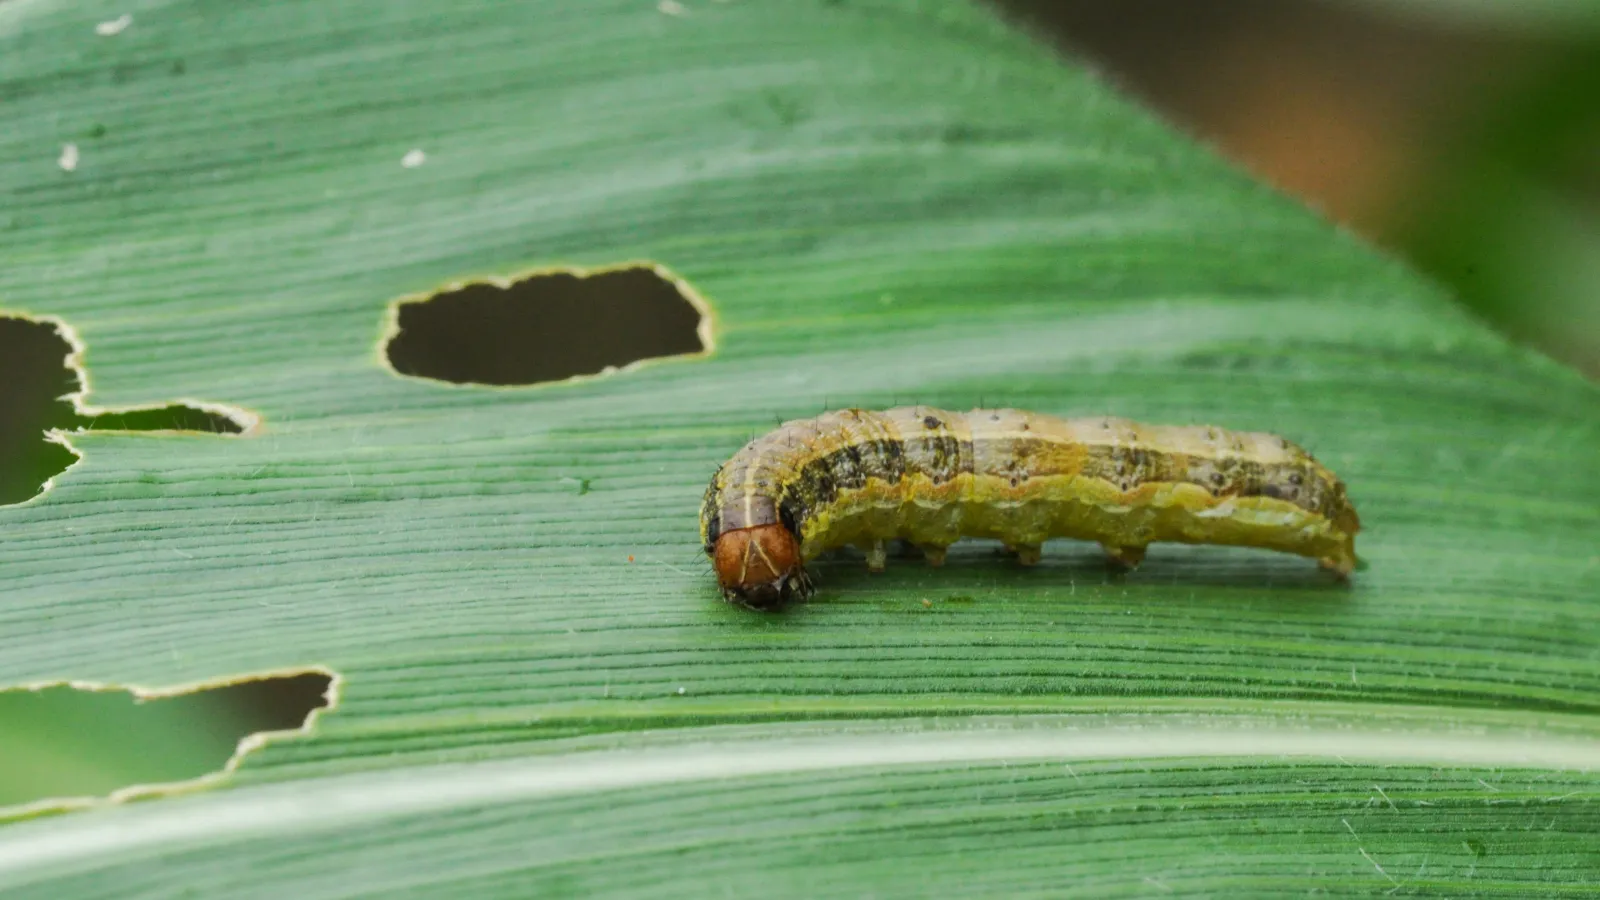 Armyworm on a leaf blade